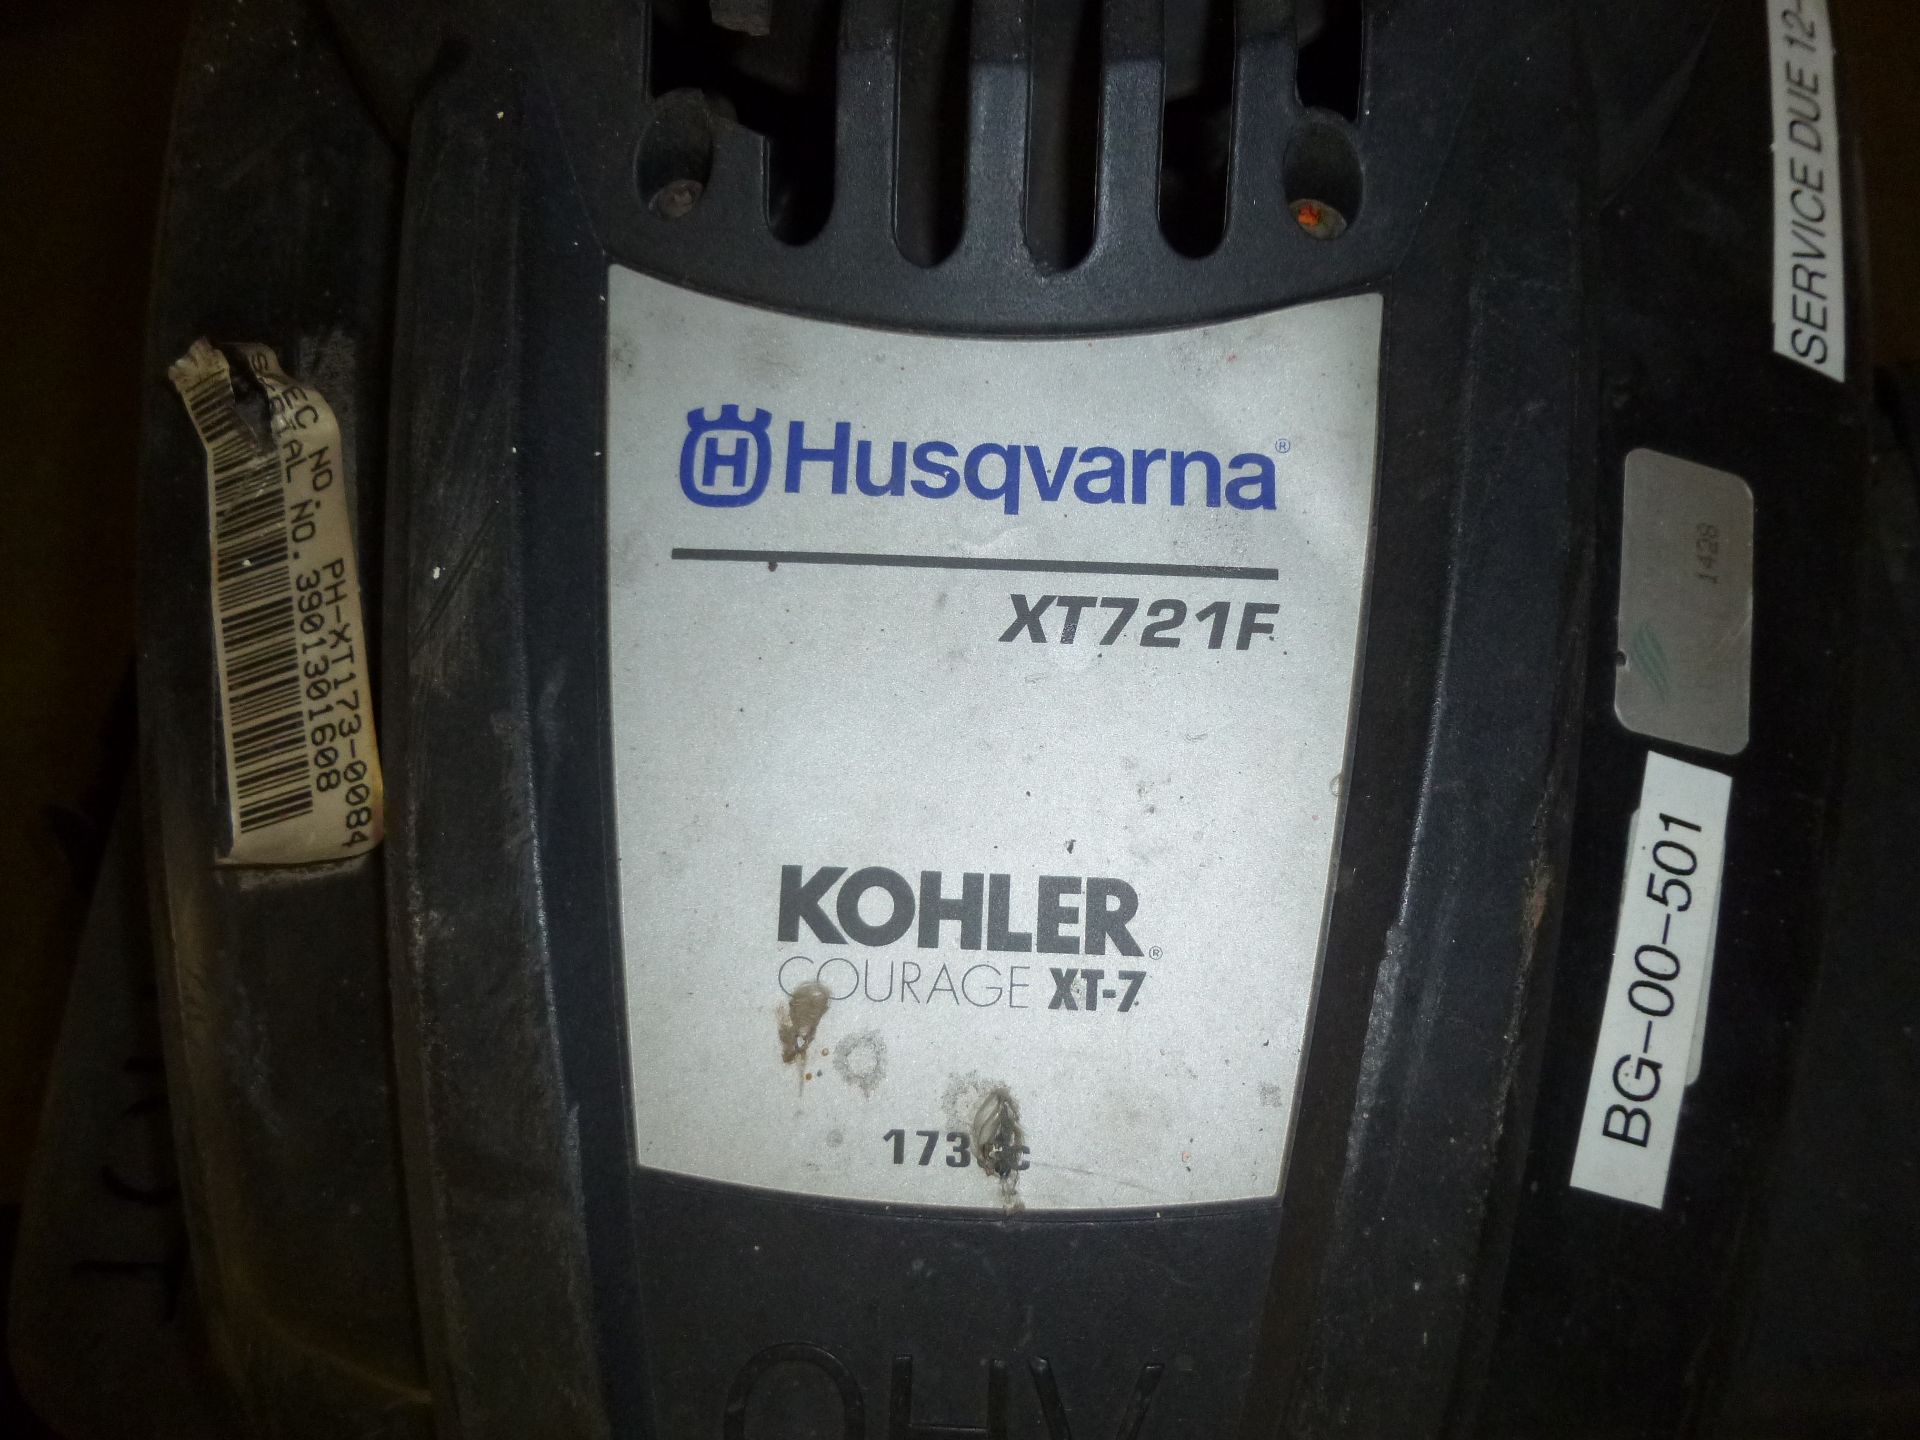 Husqvarna model XT721F mower with Kohler motor, said to run but case leaks oil - Image 2 of 2